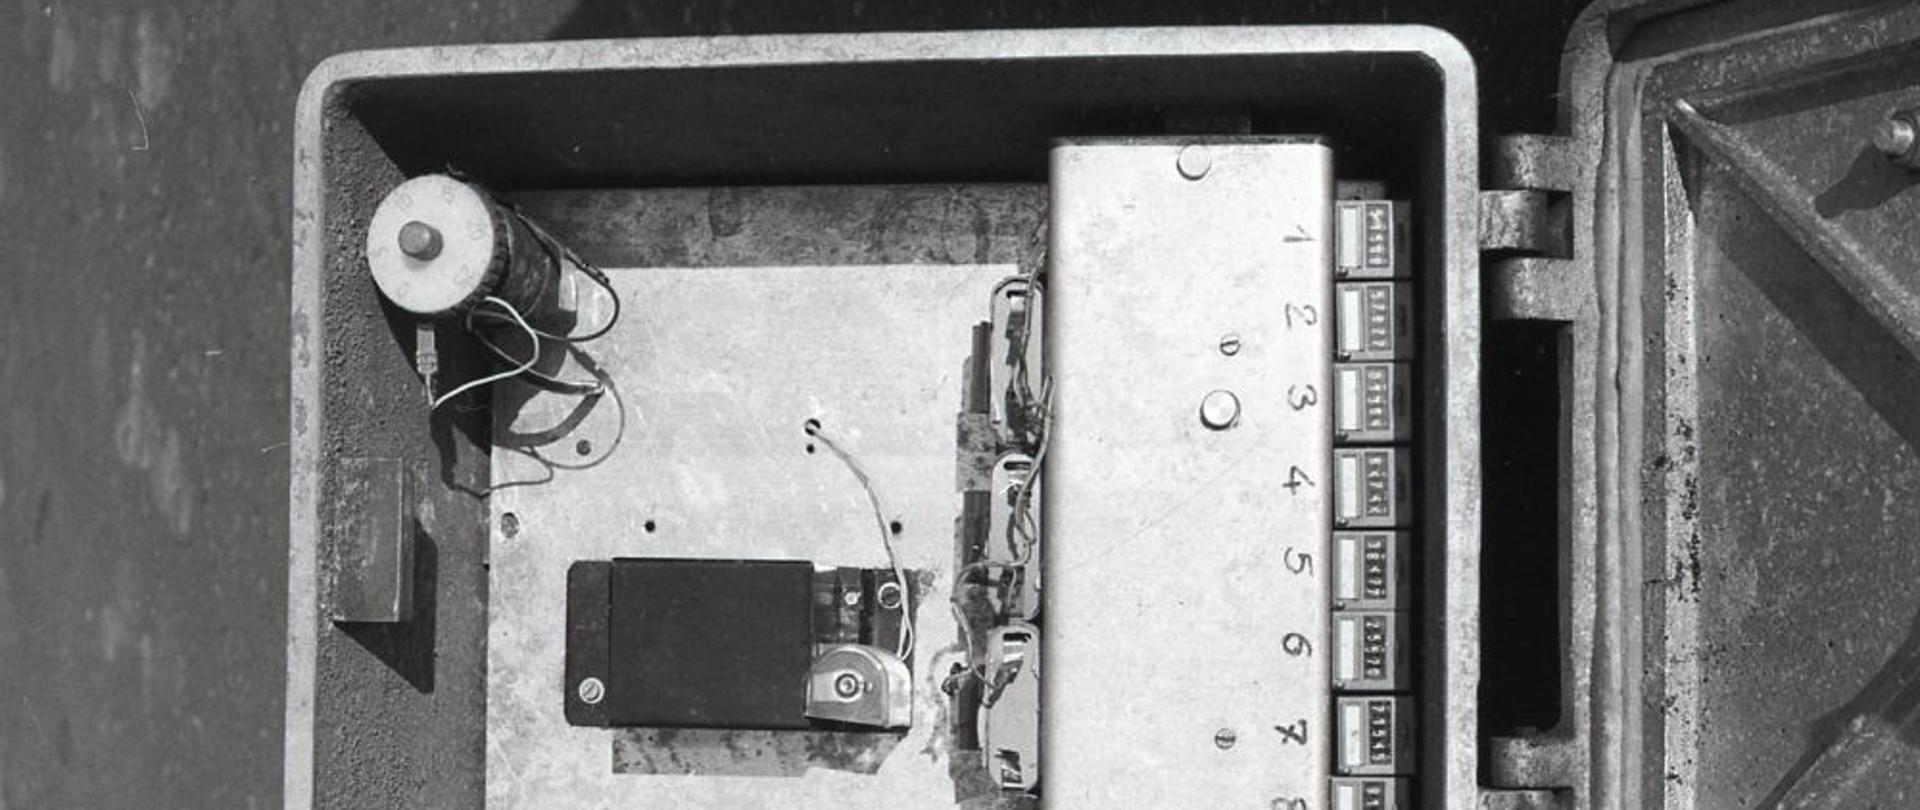 Widok na elementy przyrządu pomiarowego wewnątrz metalowej skrzyni. W środku osiem liczników analogowych, cewki elektryczne. 